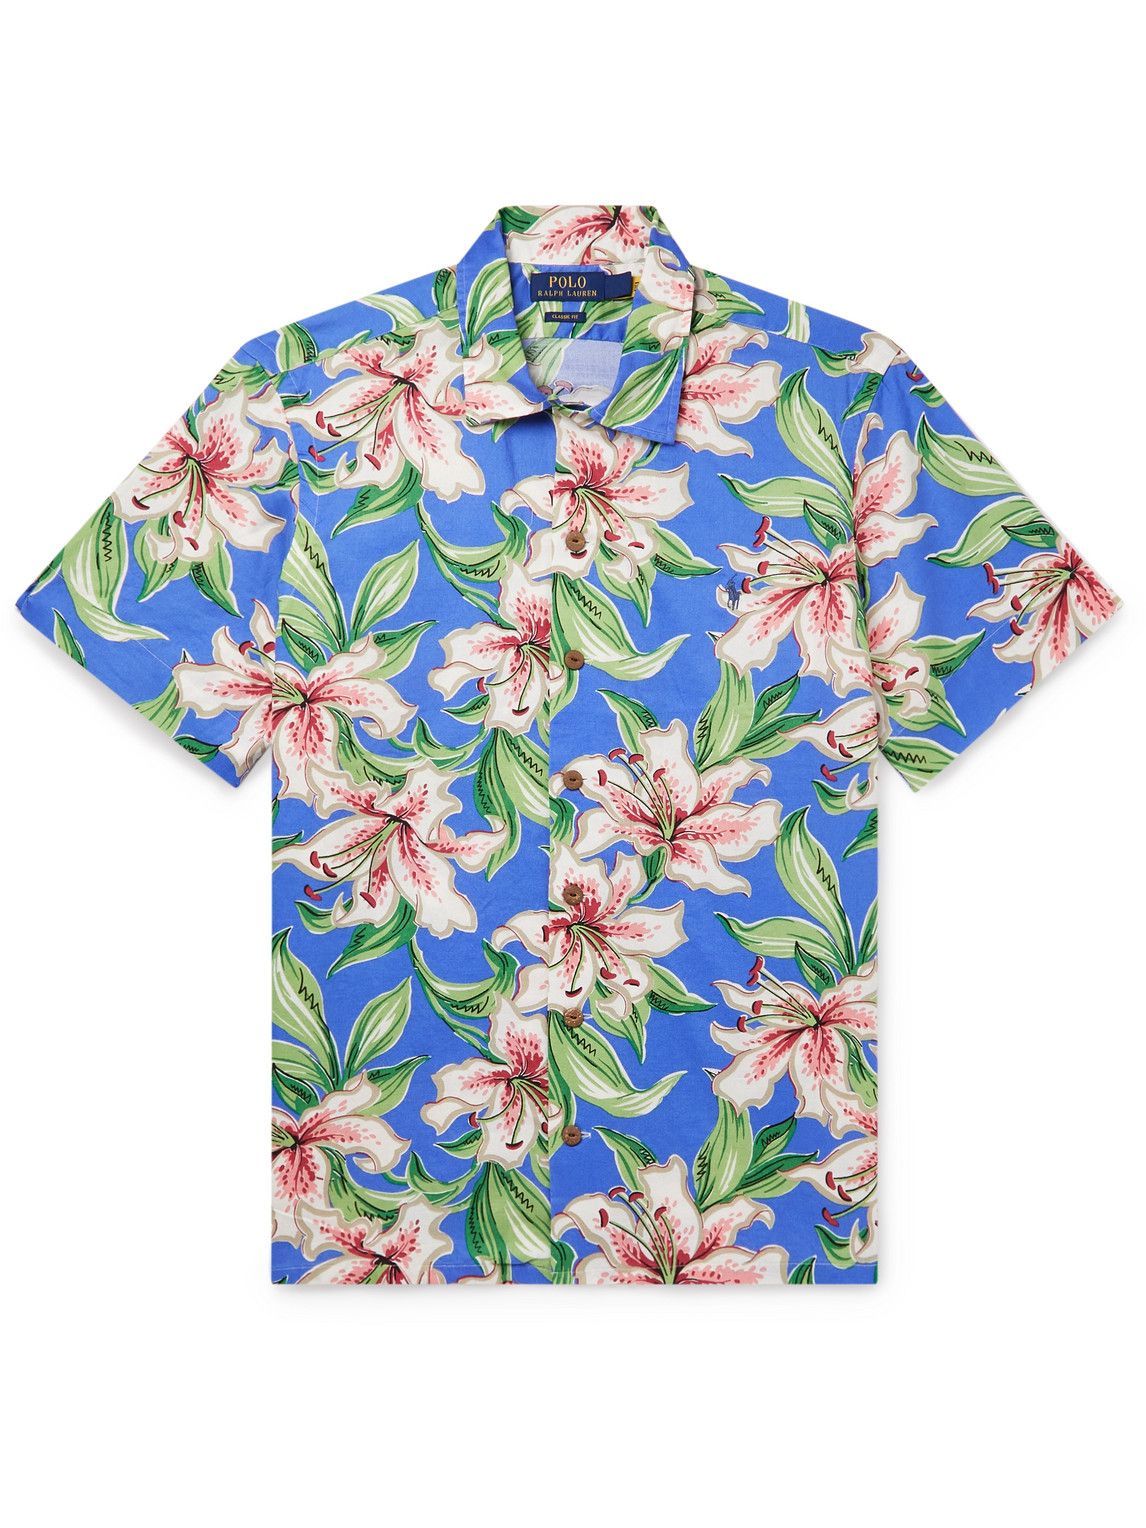 Polo Ralph Lauren - Floral-Print Cotton Shirt - Multi